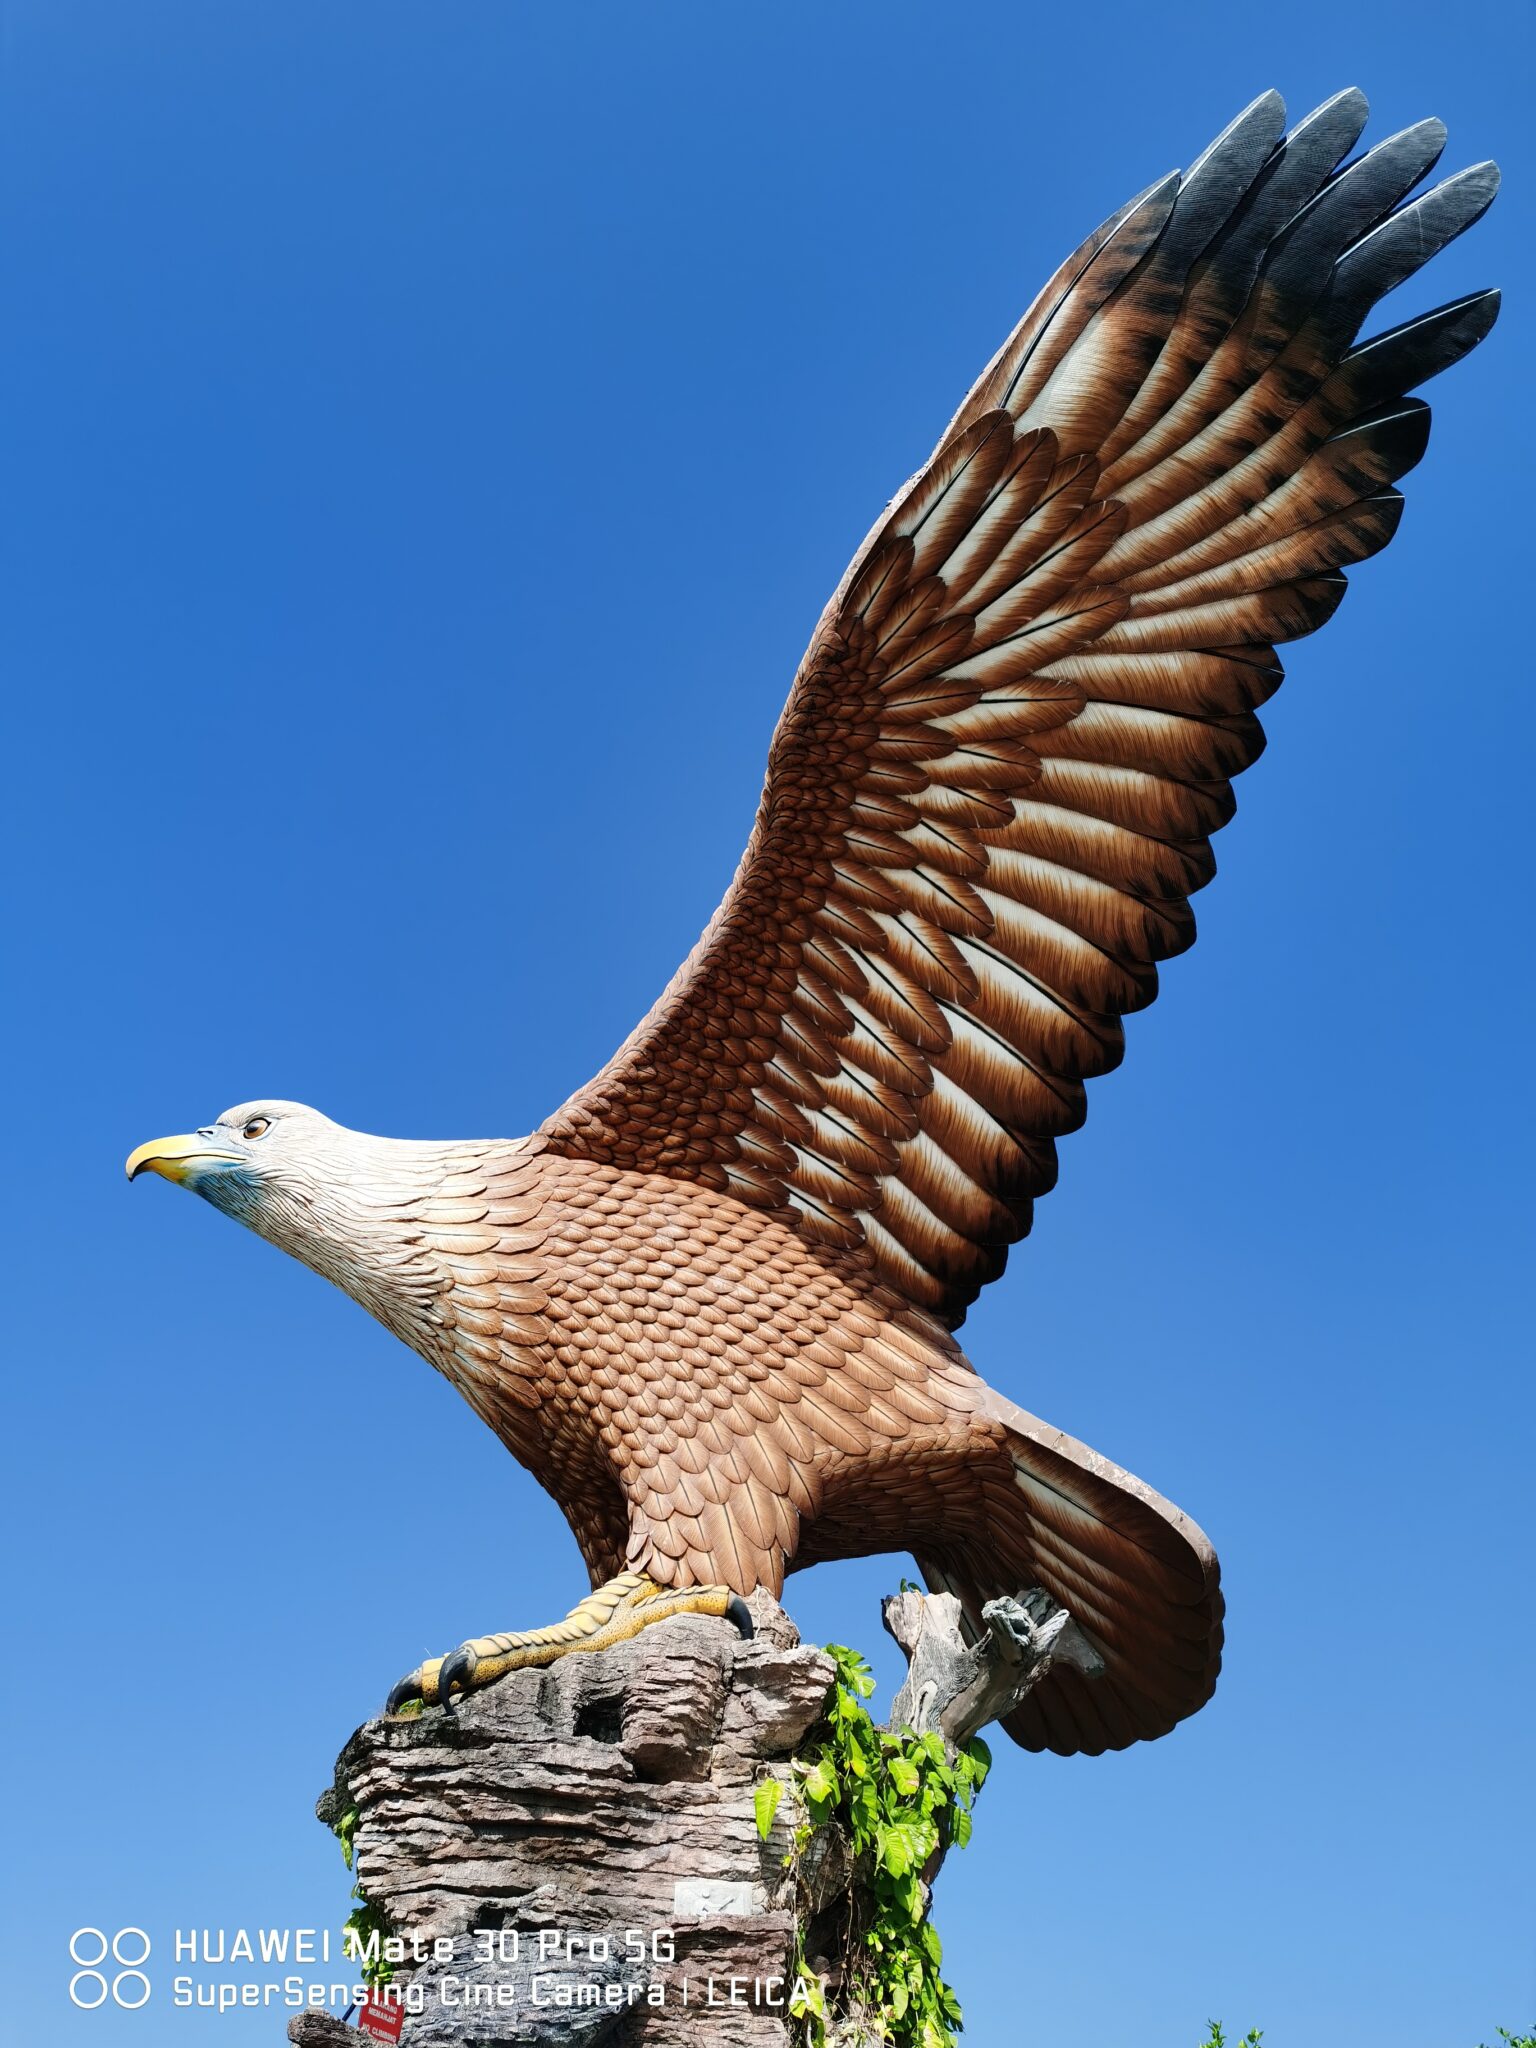 Mate30 Pro 5G eagle